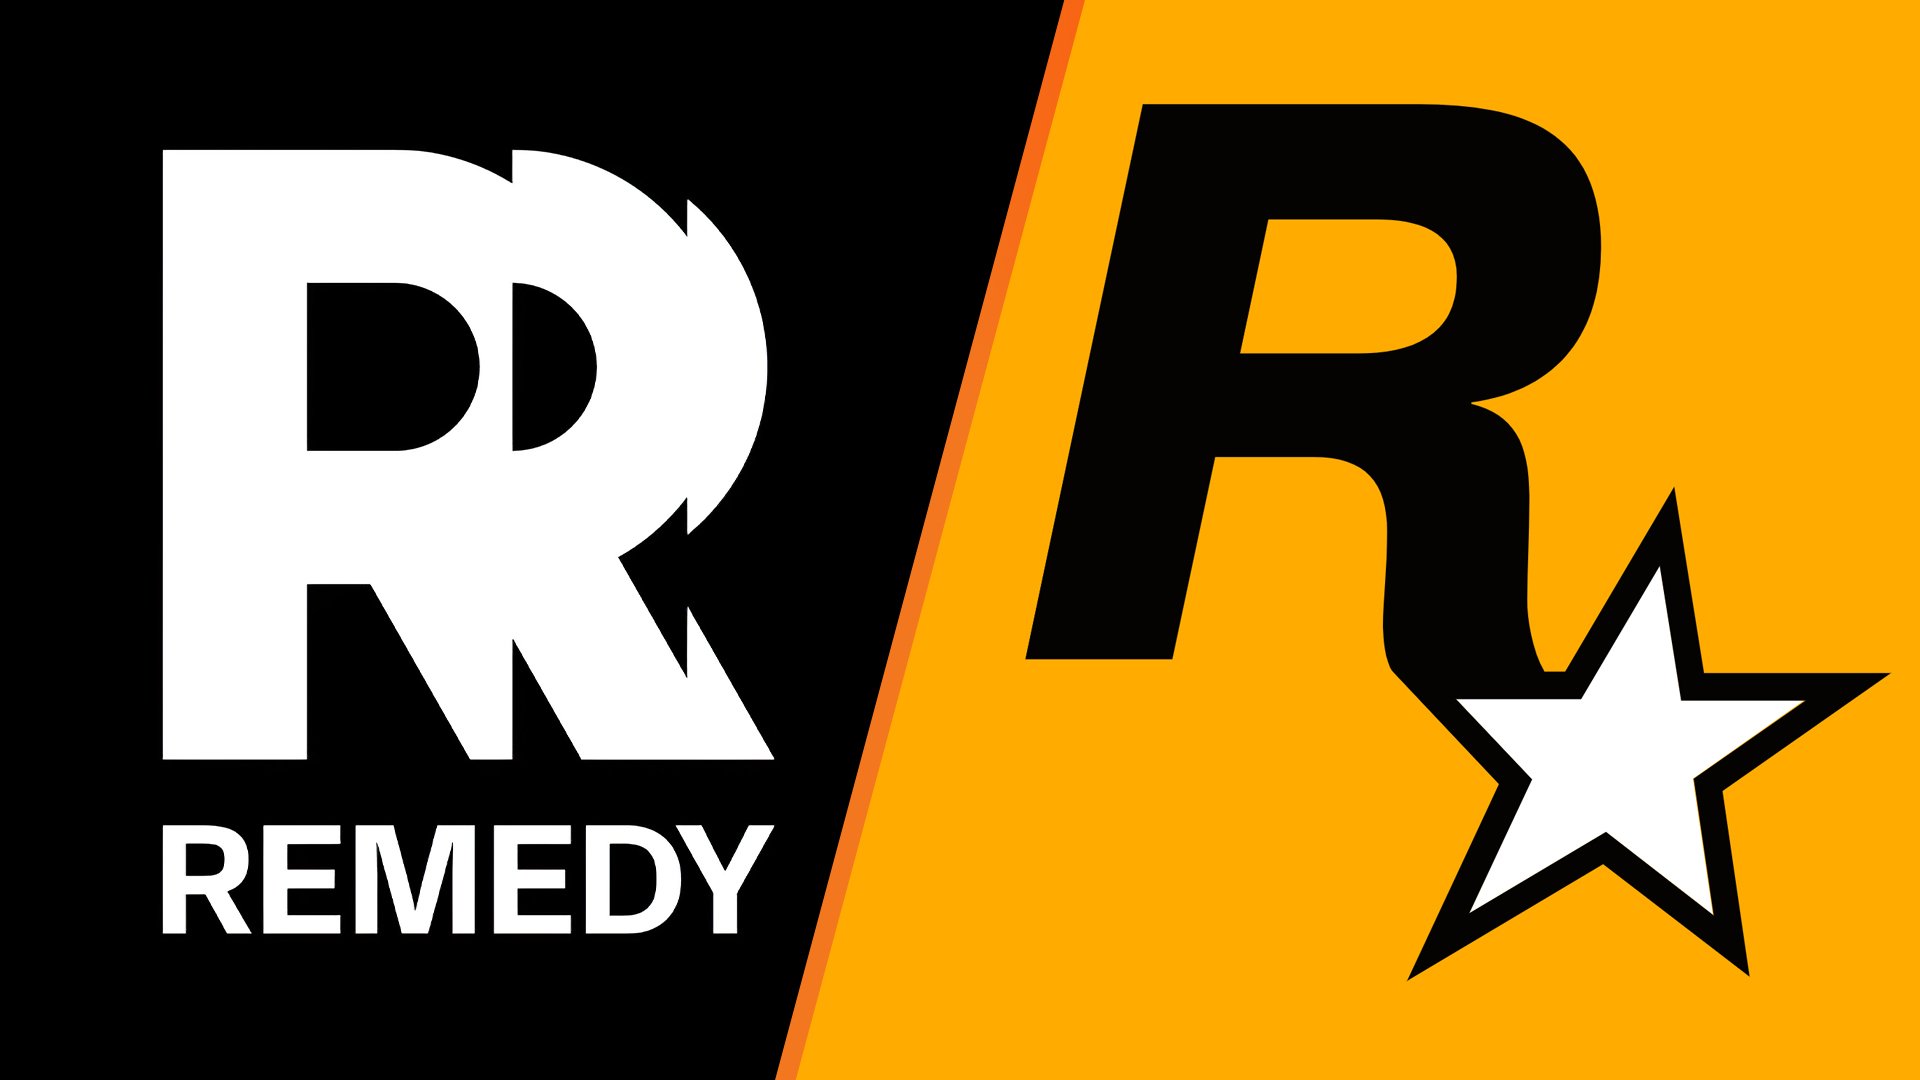 Take-Two heeft een handelsmerkgeschil ingediend over het nieuwe logo van Remedy, omdat het te veel op het logo van Rockstar lijkt.